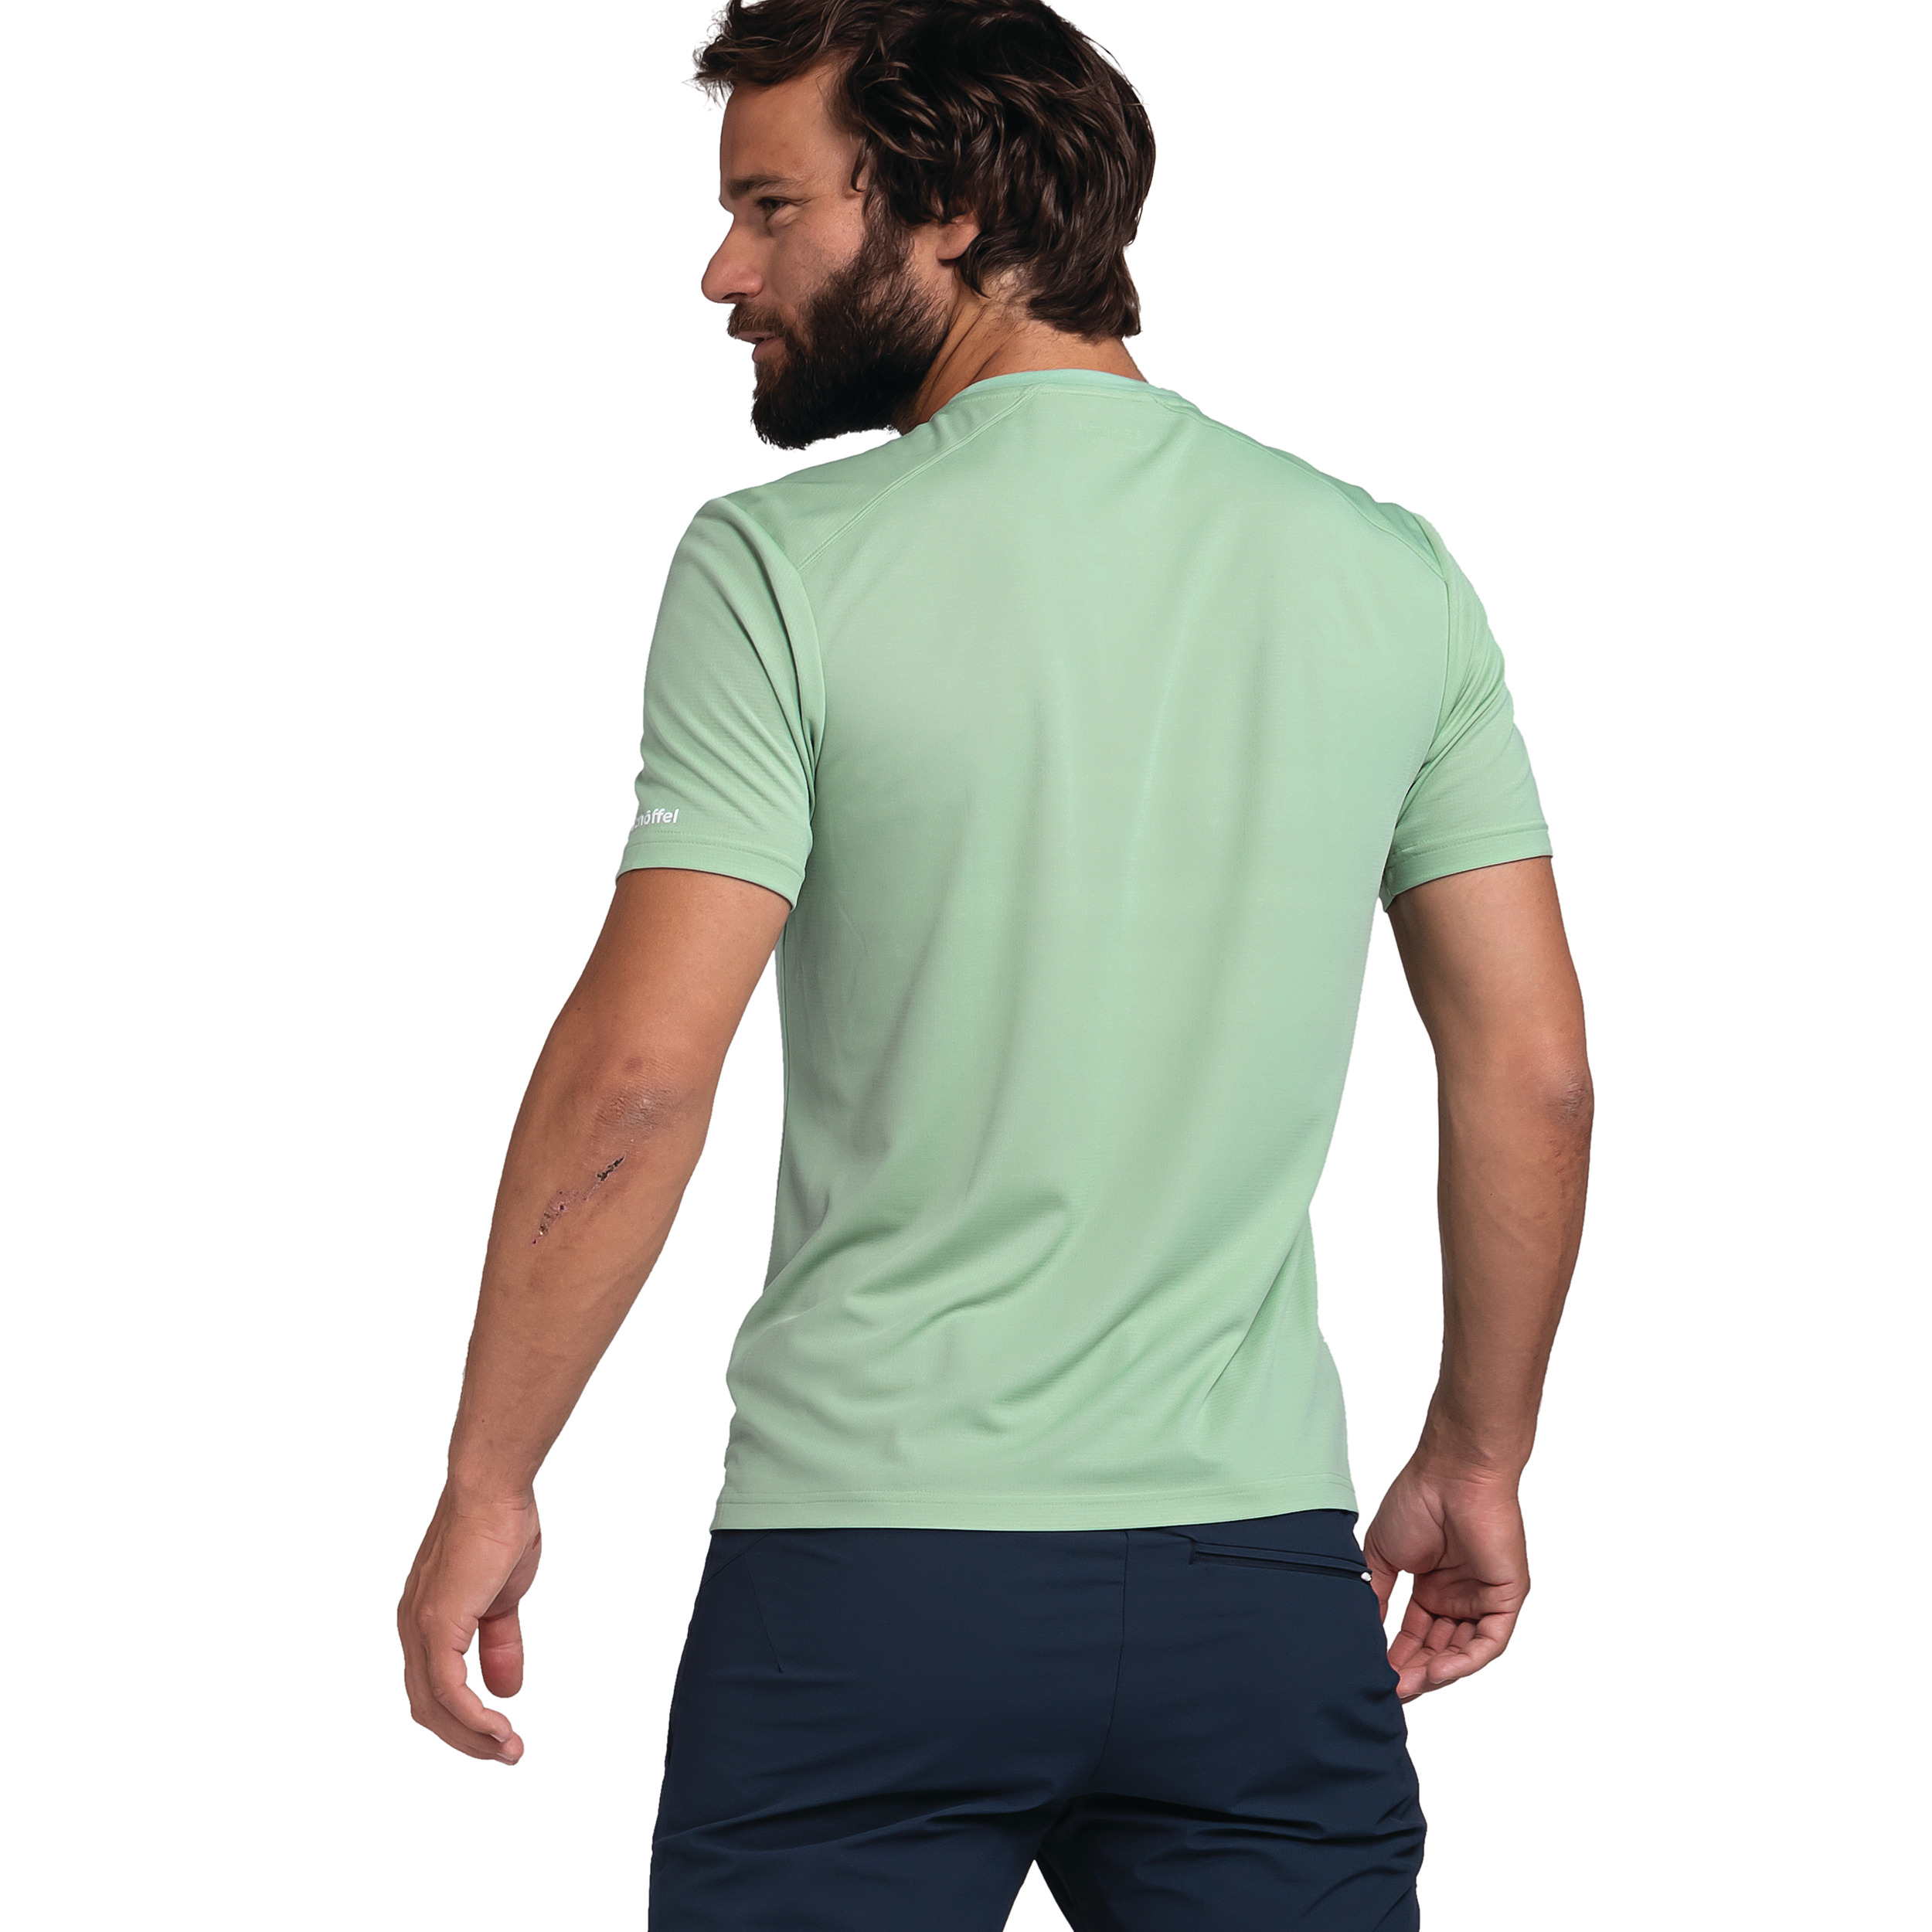 Schöffel T M kaufen Shirt Solvorn1 grün - online